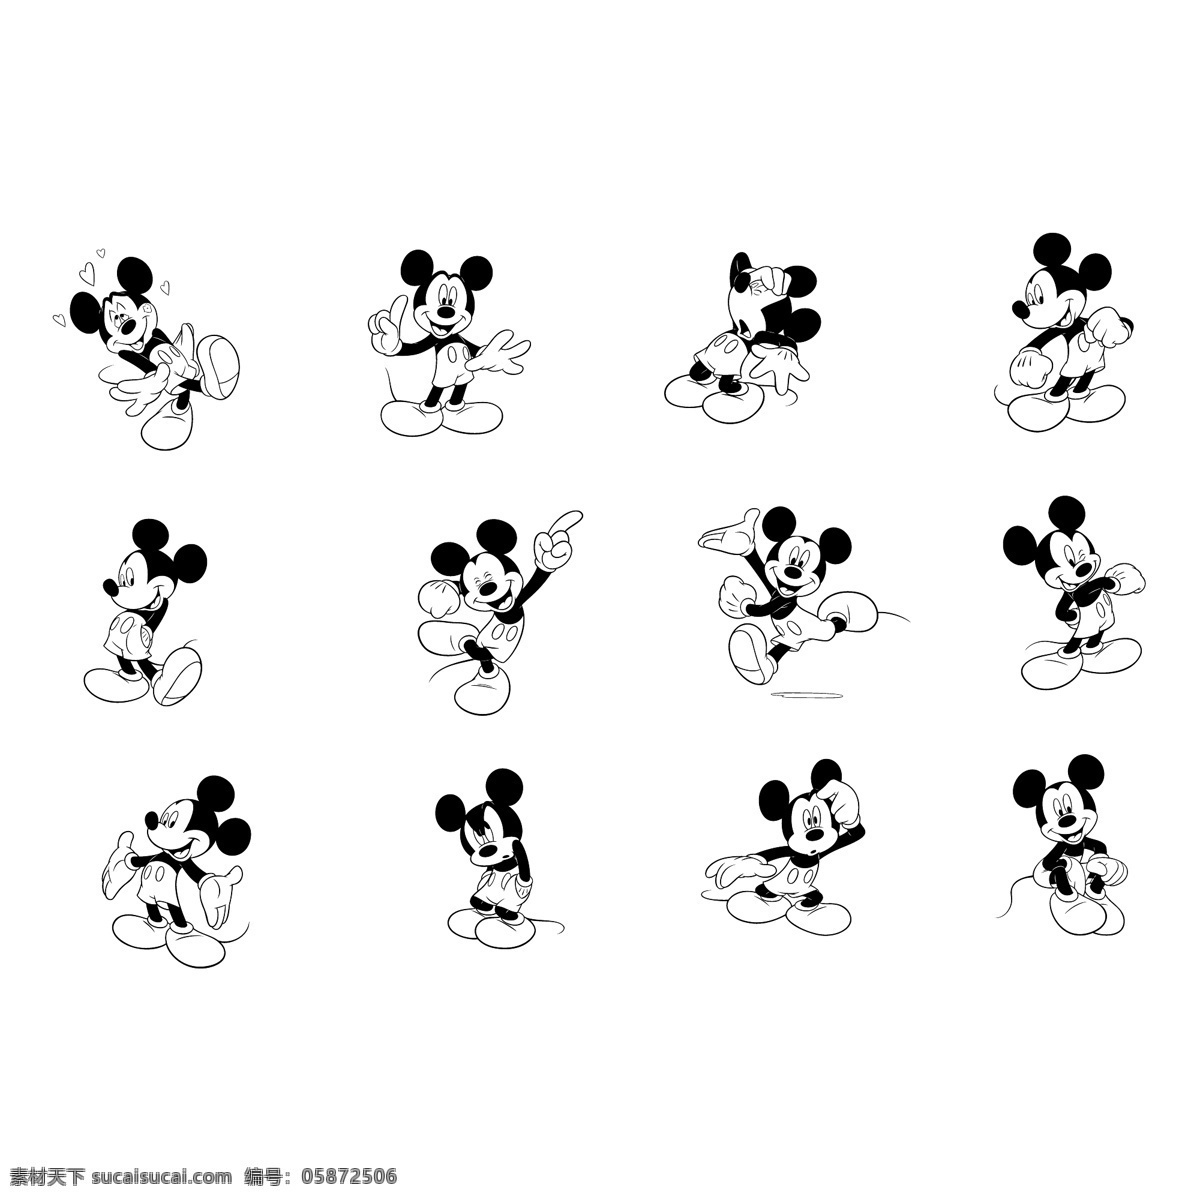 米奇老鼠5 老鼠 米奇 米奇老鼠 矢量 图形 卡通下载 迪士尼 艺术 载体 免费矢量米奇 米奇老鼠图案 文件 米奇老鼠米妮 建筑家居